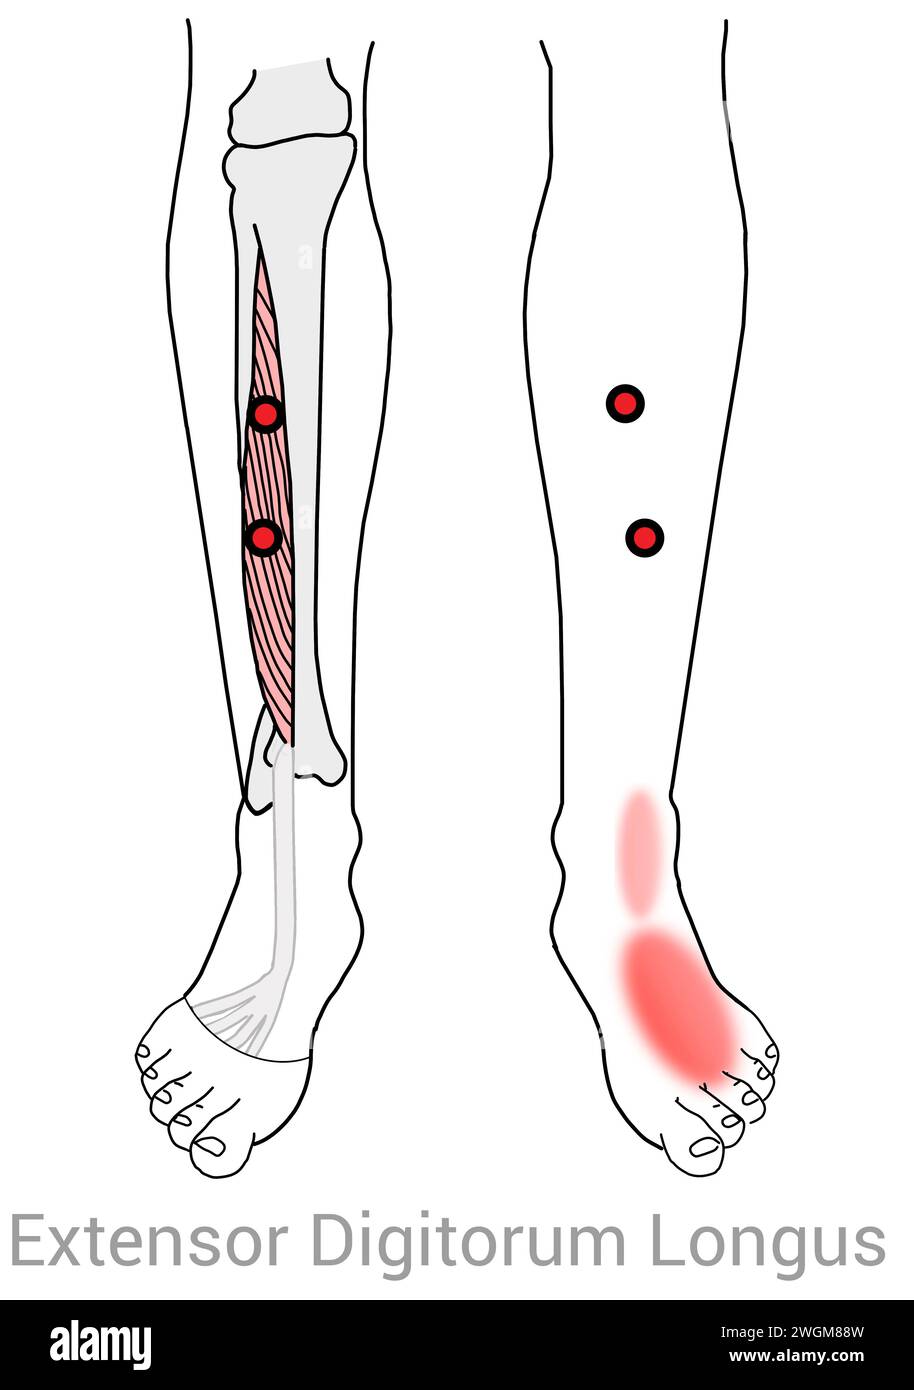 Extensor Digitorum Longus: Punti di attivazione miofasciale che causano dolore lungo lo stinco nella caviglia e nel piede, oltre ad altre posizioni di dolore associate Foto Stock